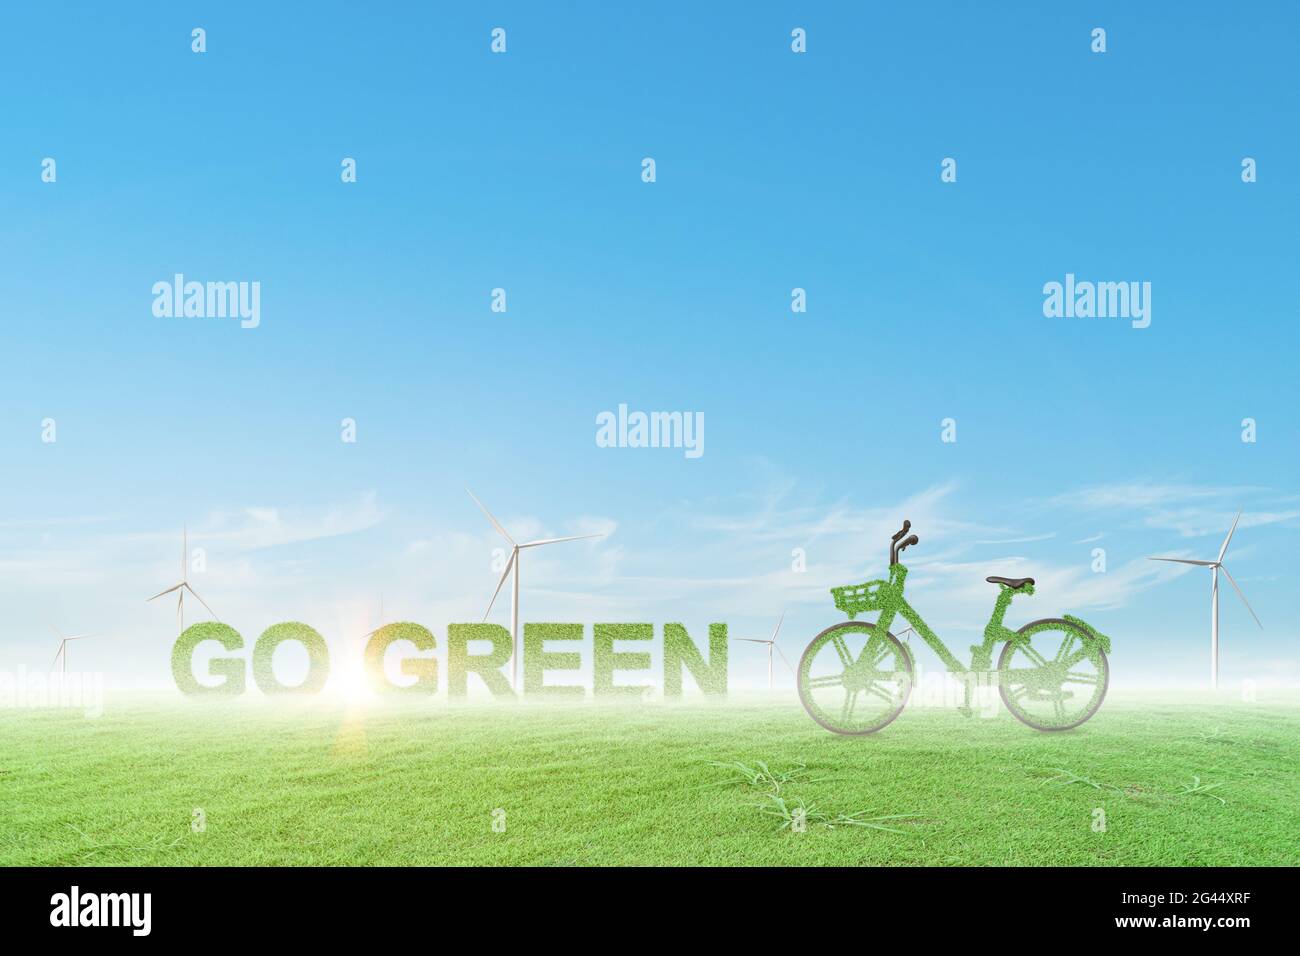 Vélo vert pour passer au vert sur le champ de l'éolienne avec fond bleu ciel. Concept écologique. Banque D'Images